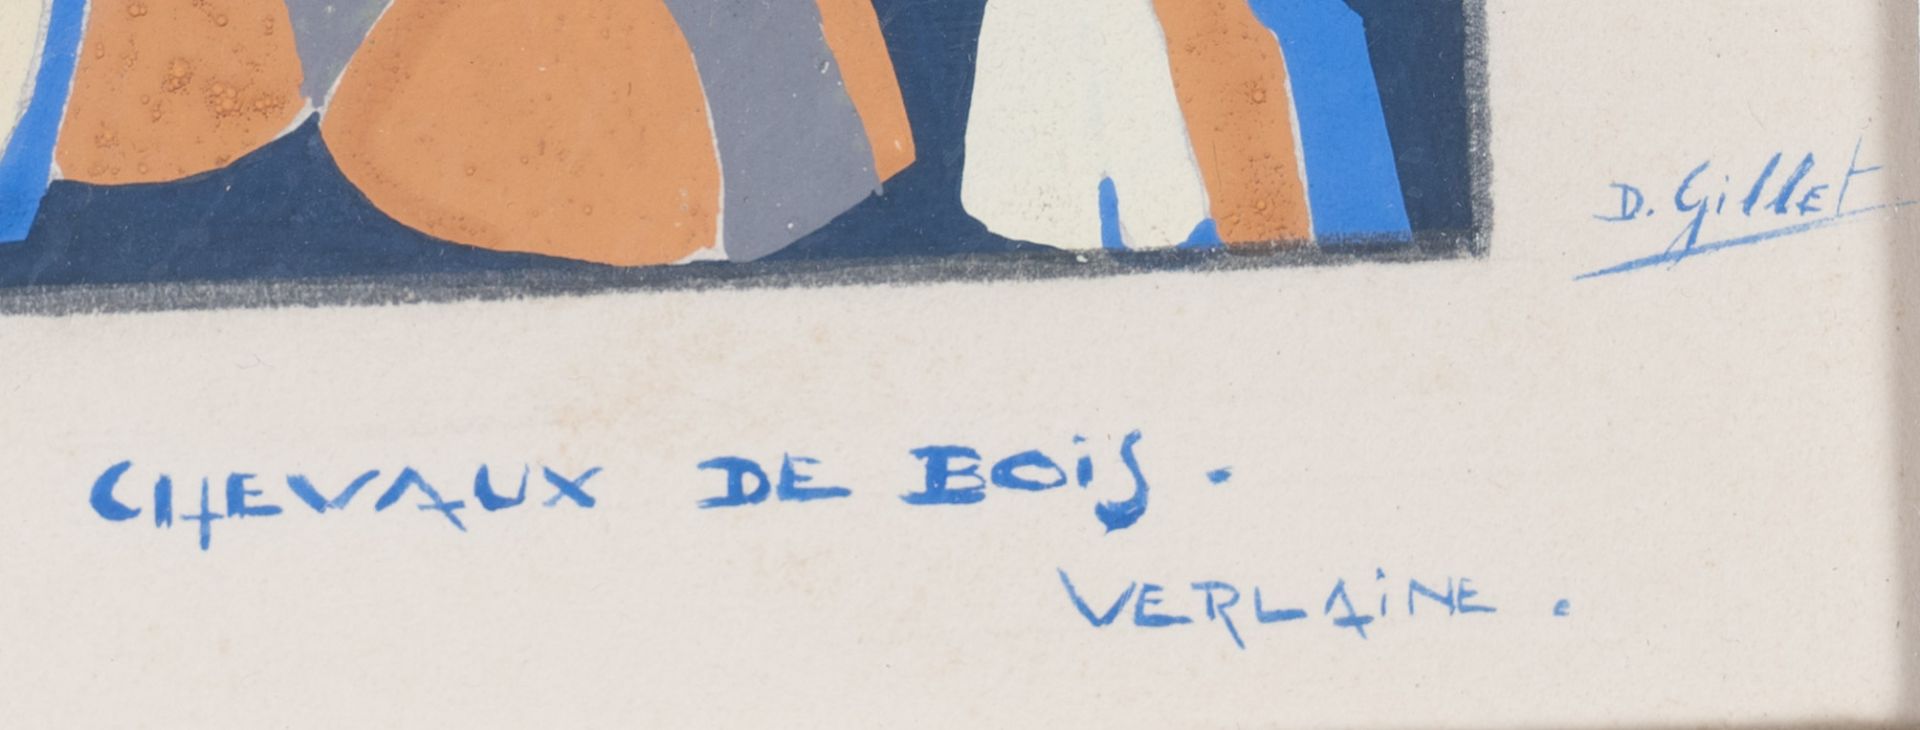 D. Gillet (20ste eeuw): 'Chevaux de bois', mixed media on paper - Image 3 of 4